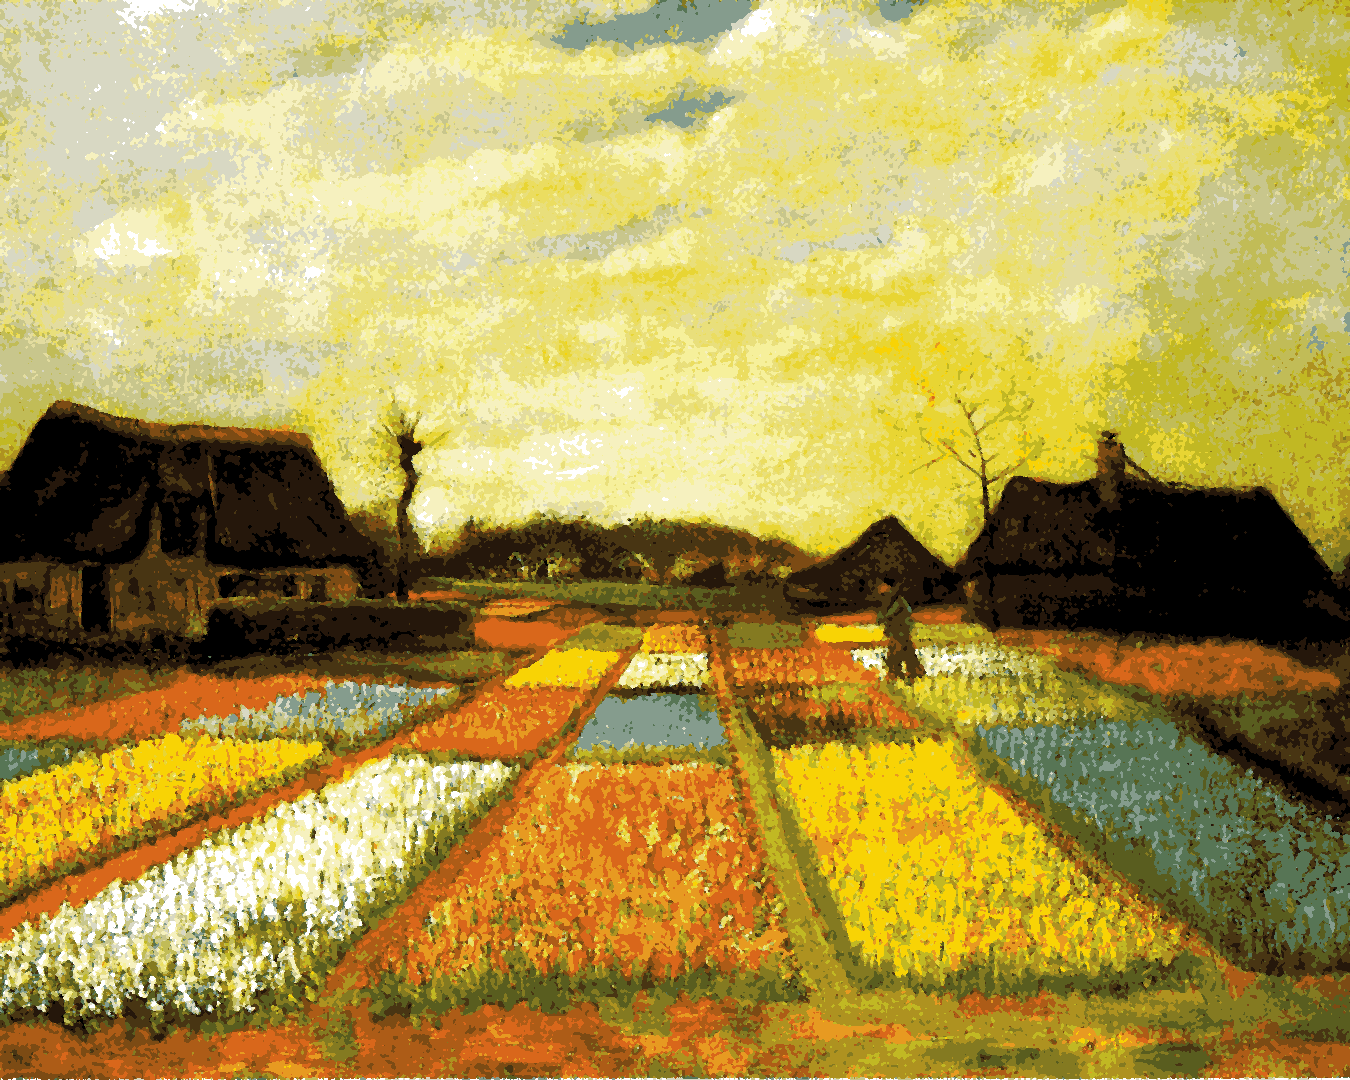 Vincent Van Gogh PD - (22) - Bulb Fields - Van-Go Paint-By-Number Kit